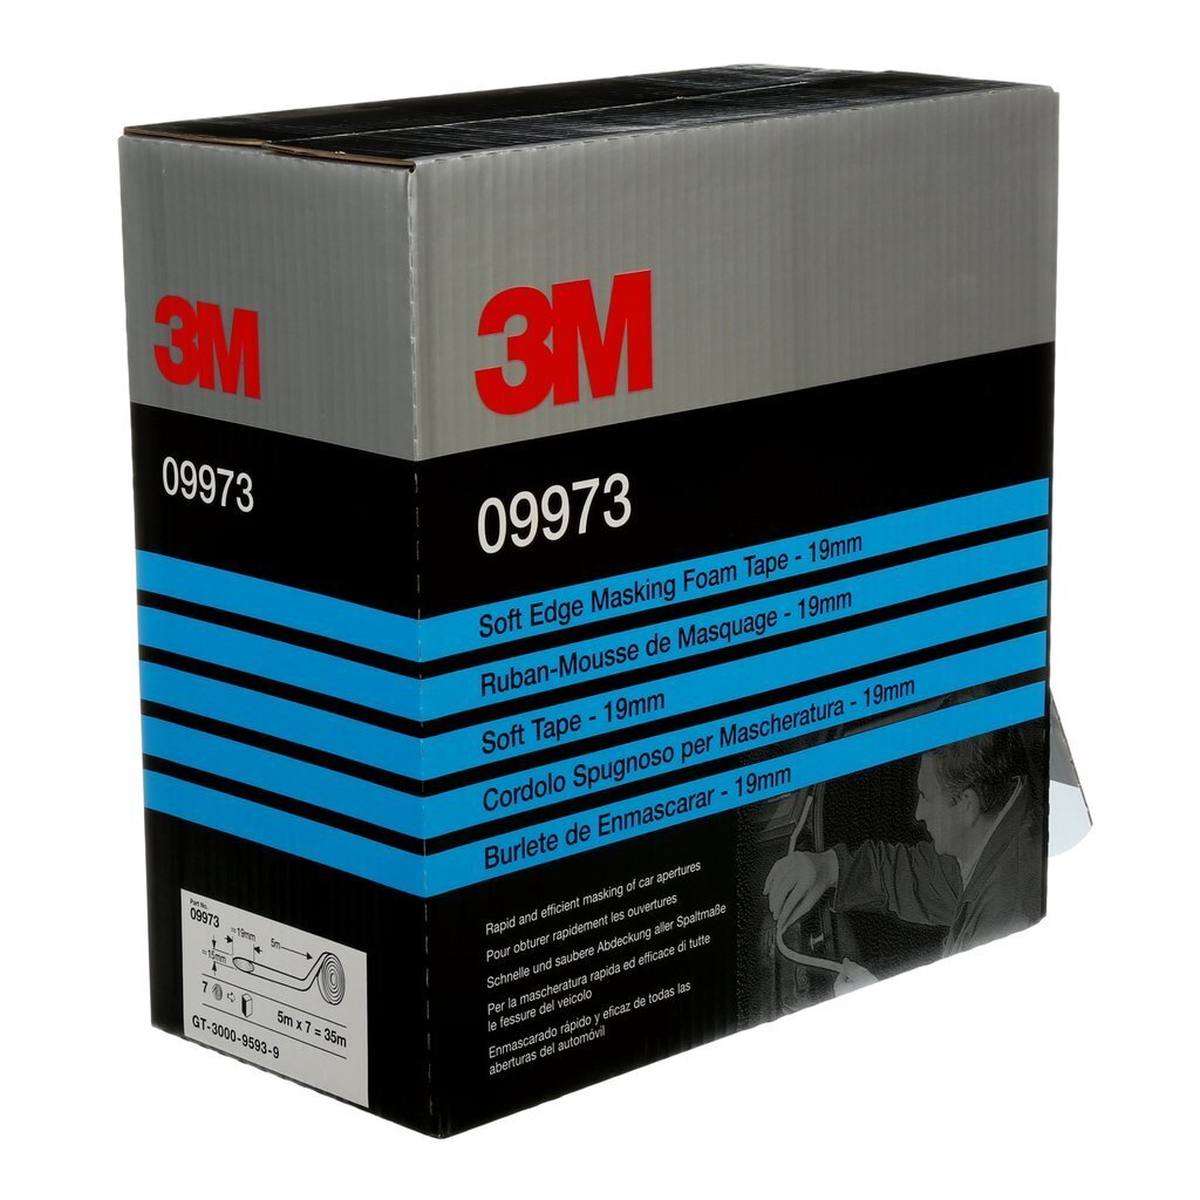 3M Soft Edge Foam masking tape, white, 19 mm x 35 m, 09973